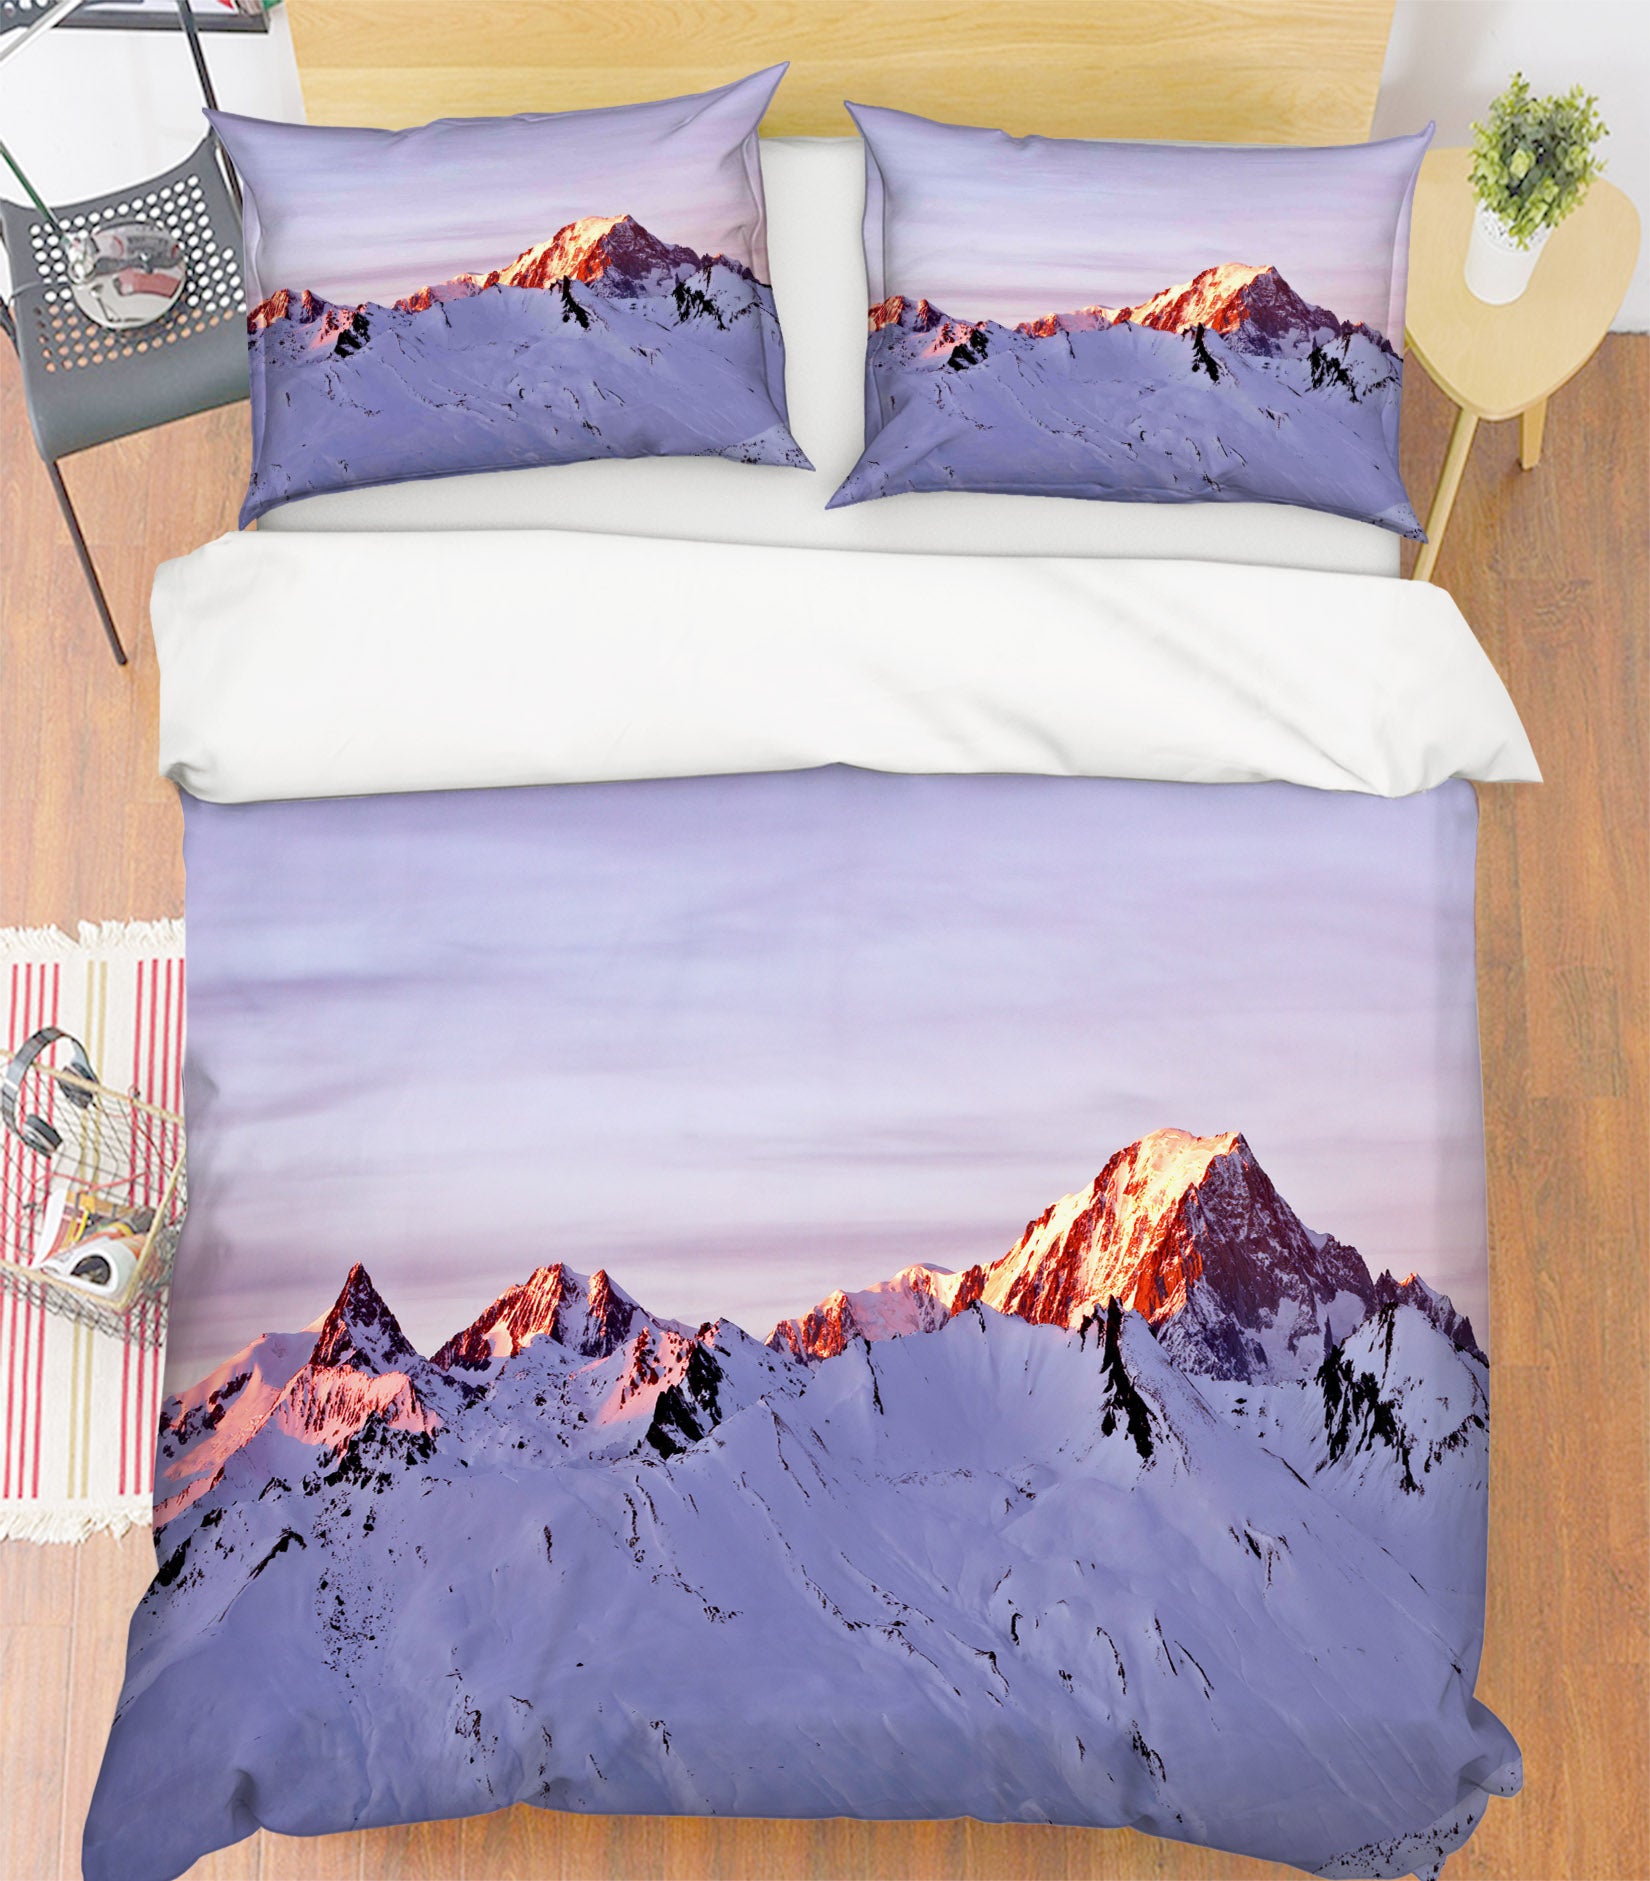 3D Snow Mountain 8581 Assaf Frank Bedding Bed Pillowcases Quilt